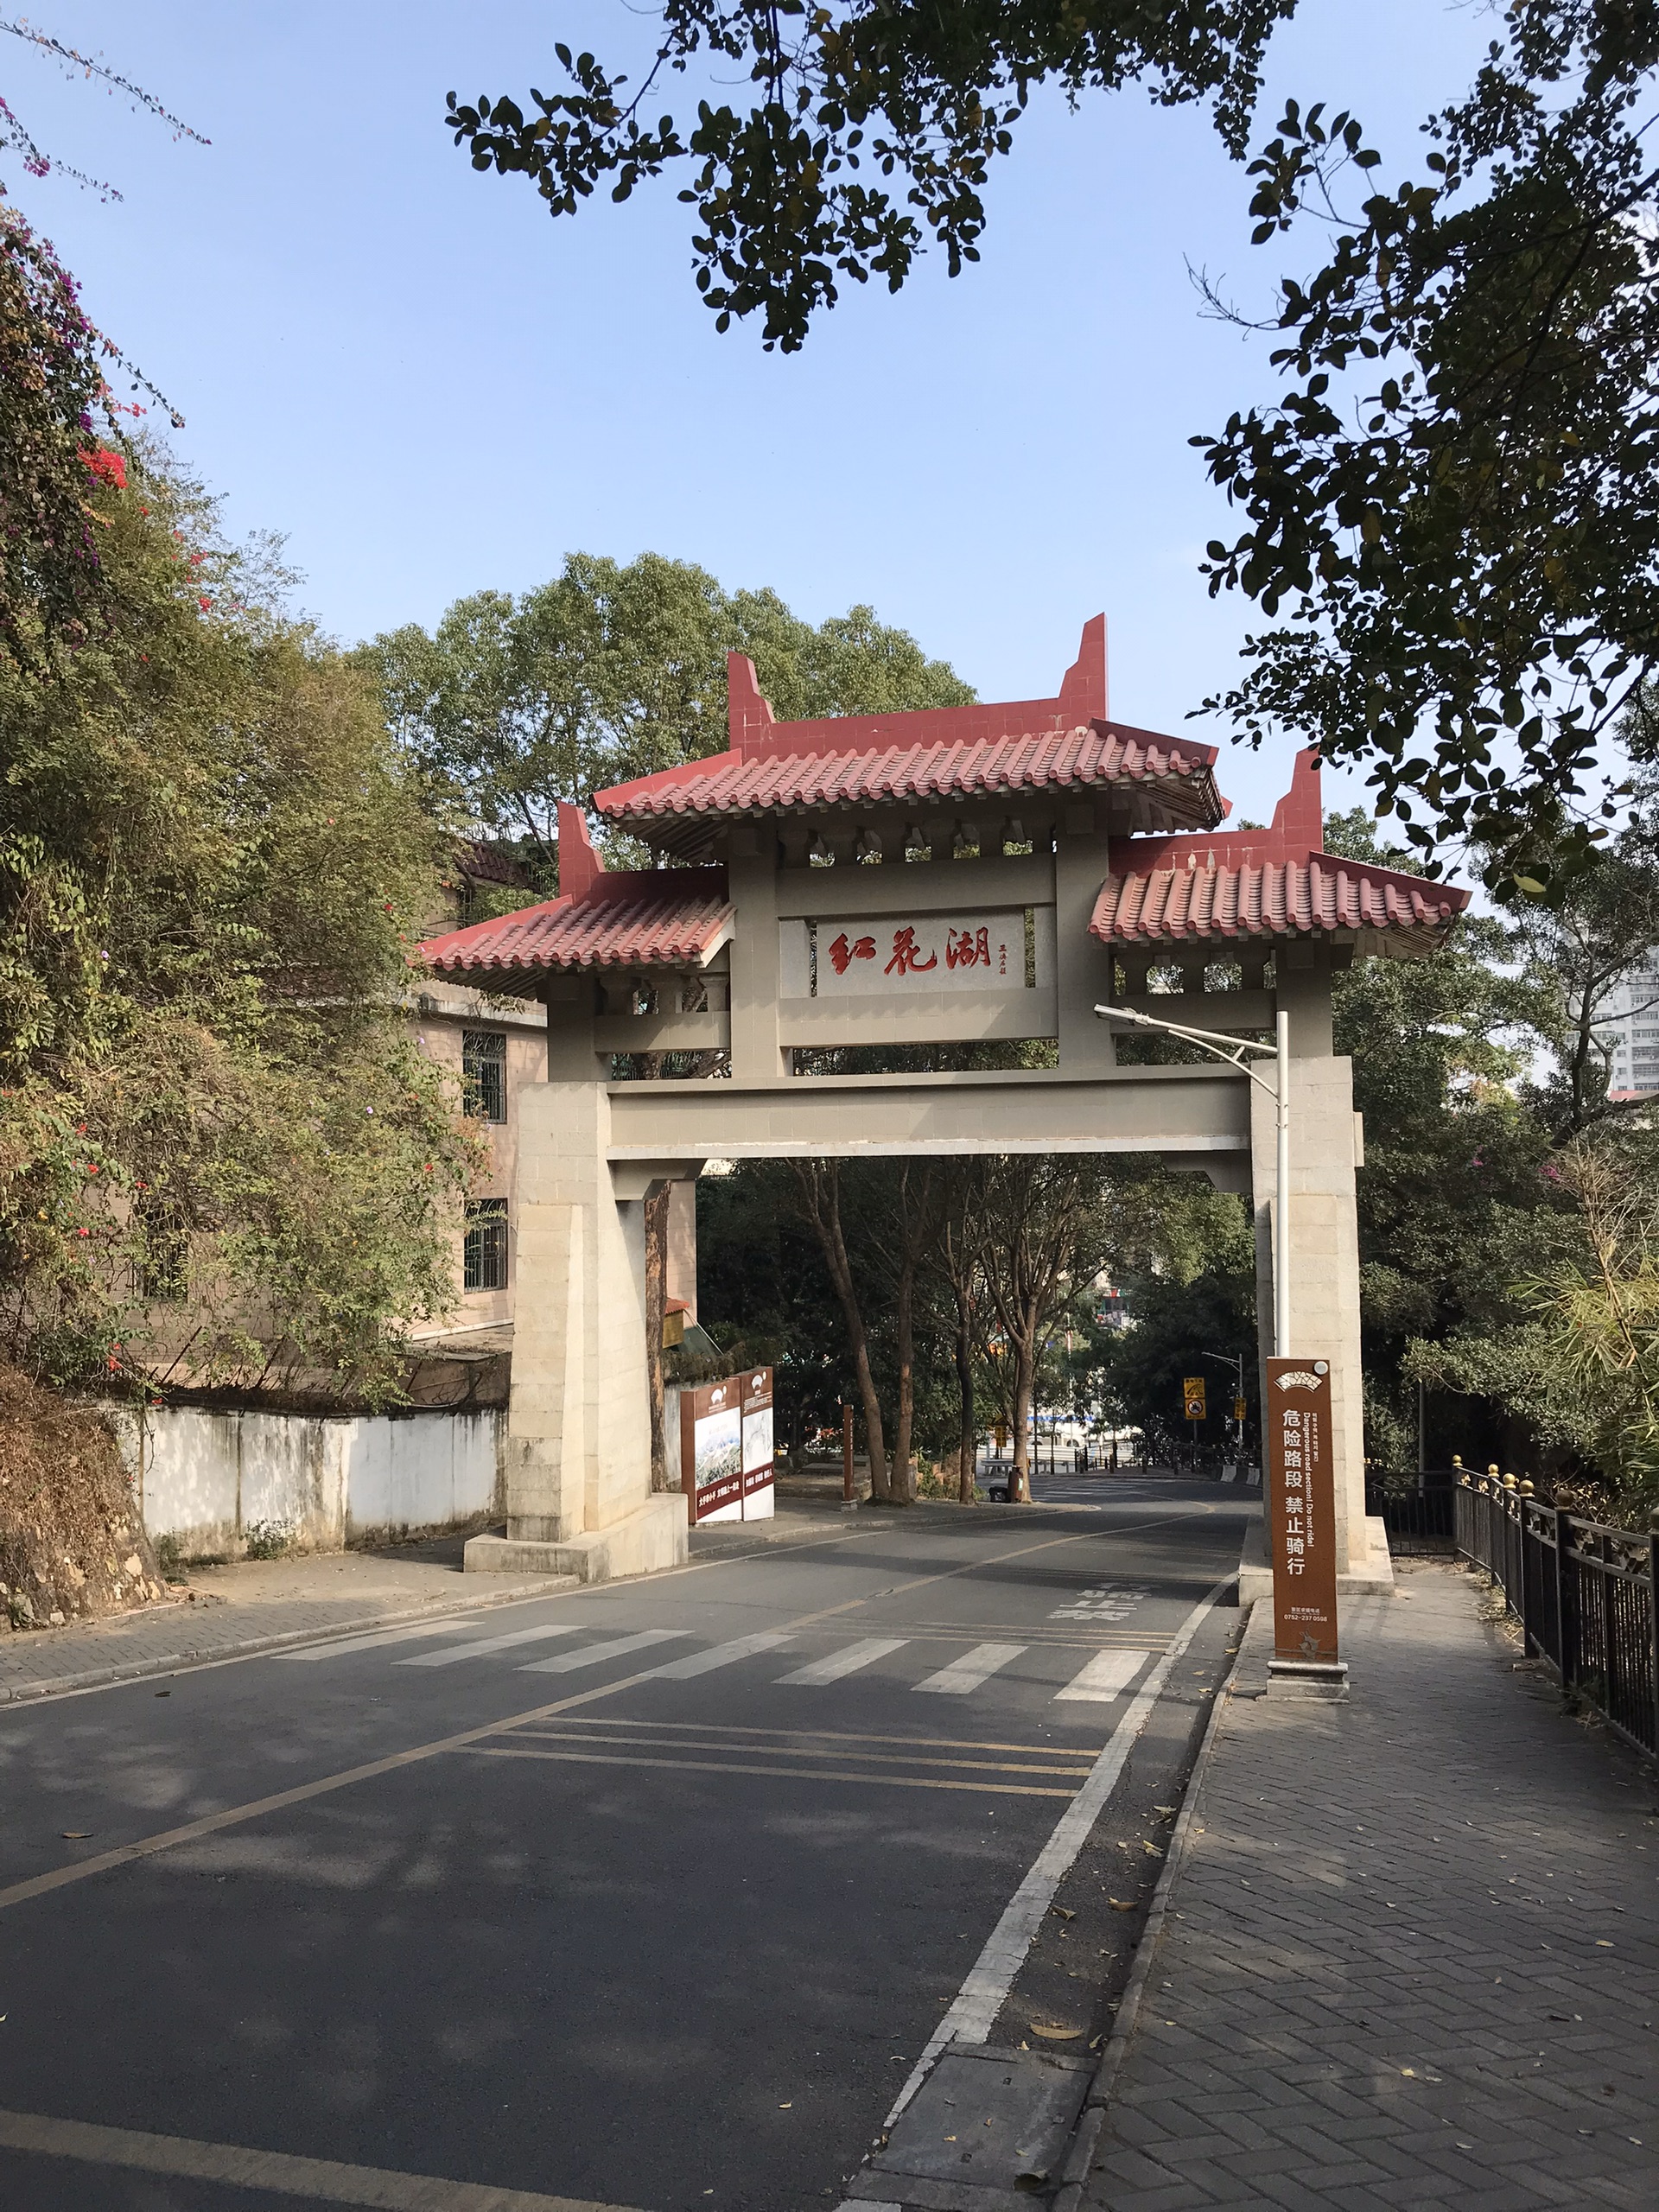 必去惠州景点红花湖 湖内线路长18公里非常适合骑自行车